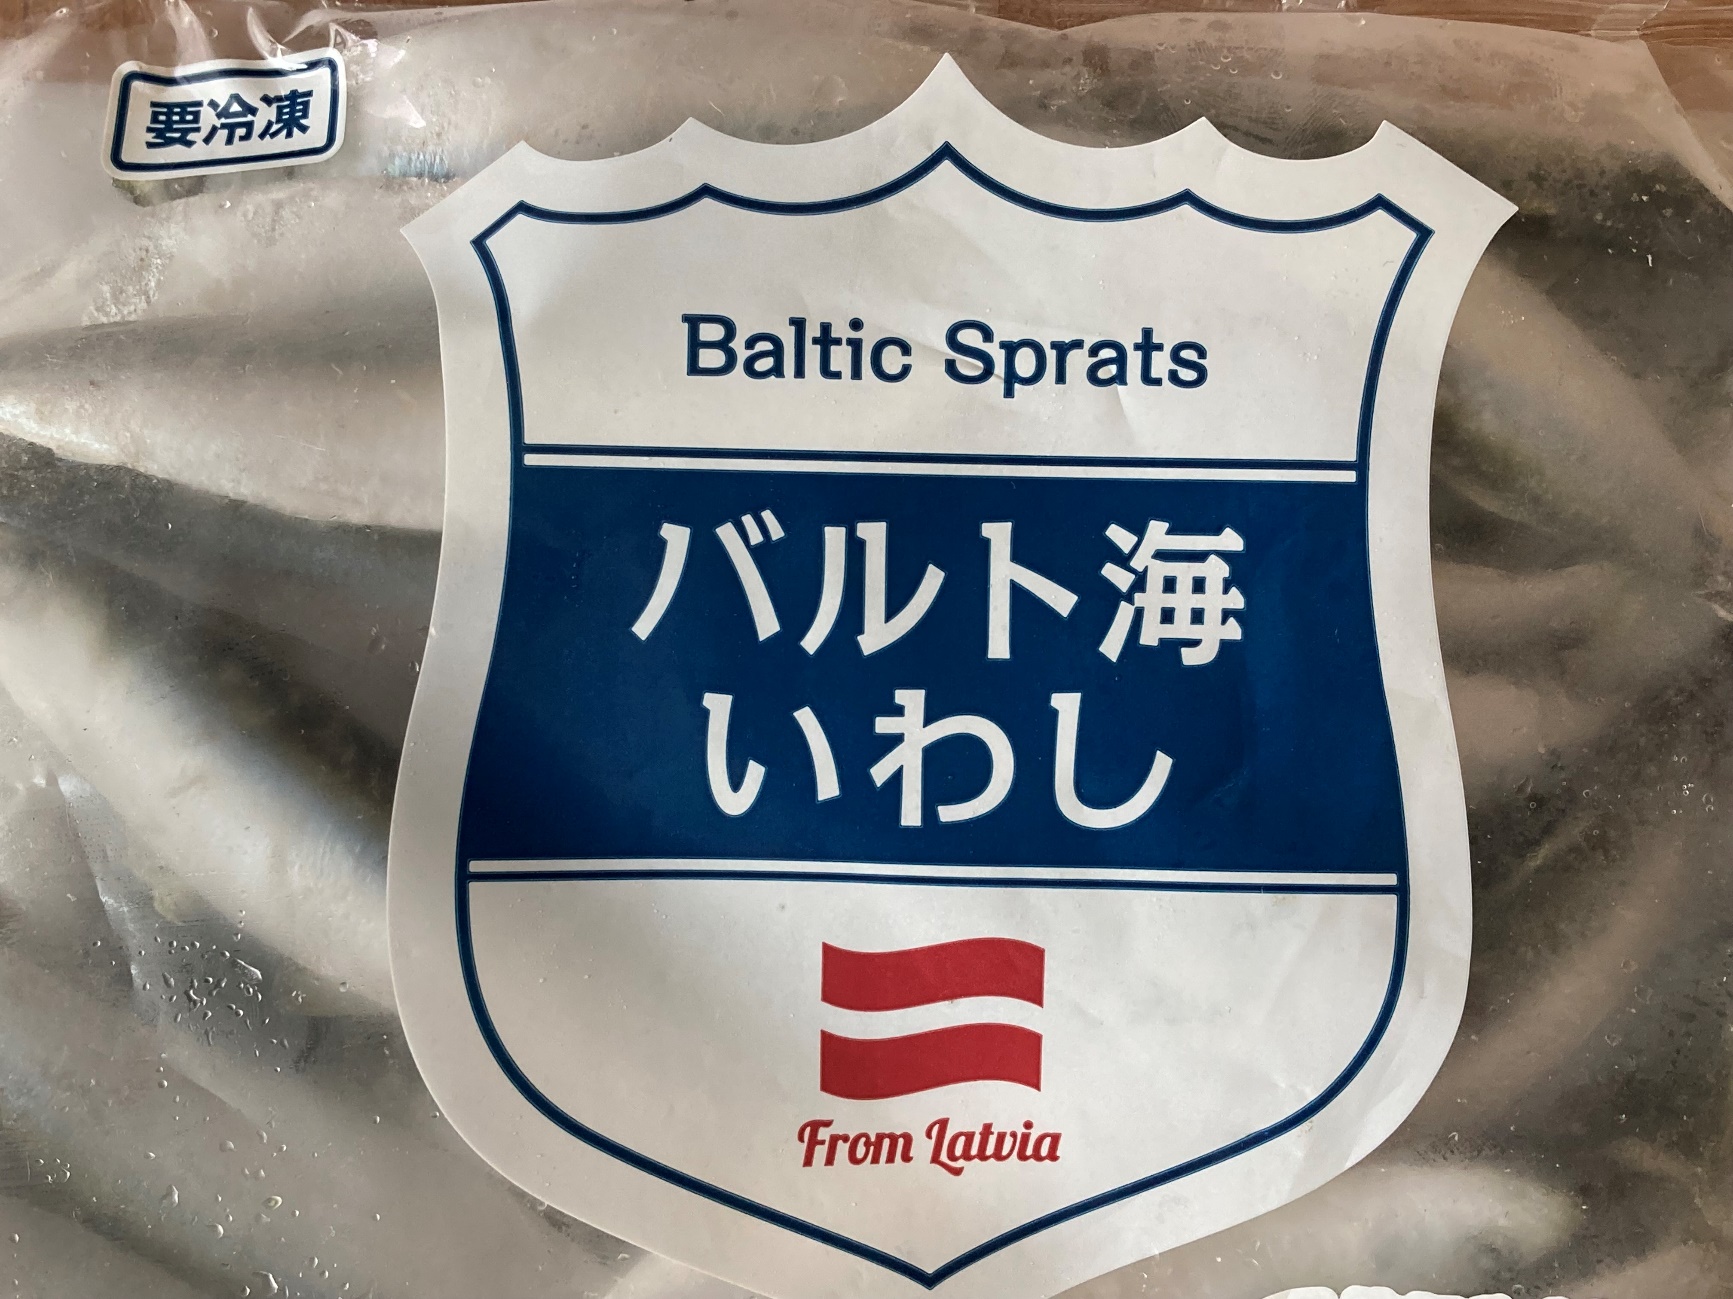 業務スーパーのバルト海いわしのパッケージに記載されている商品名のアップ